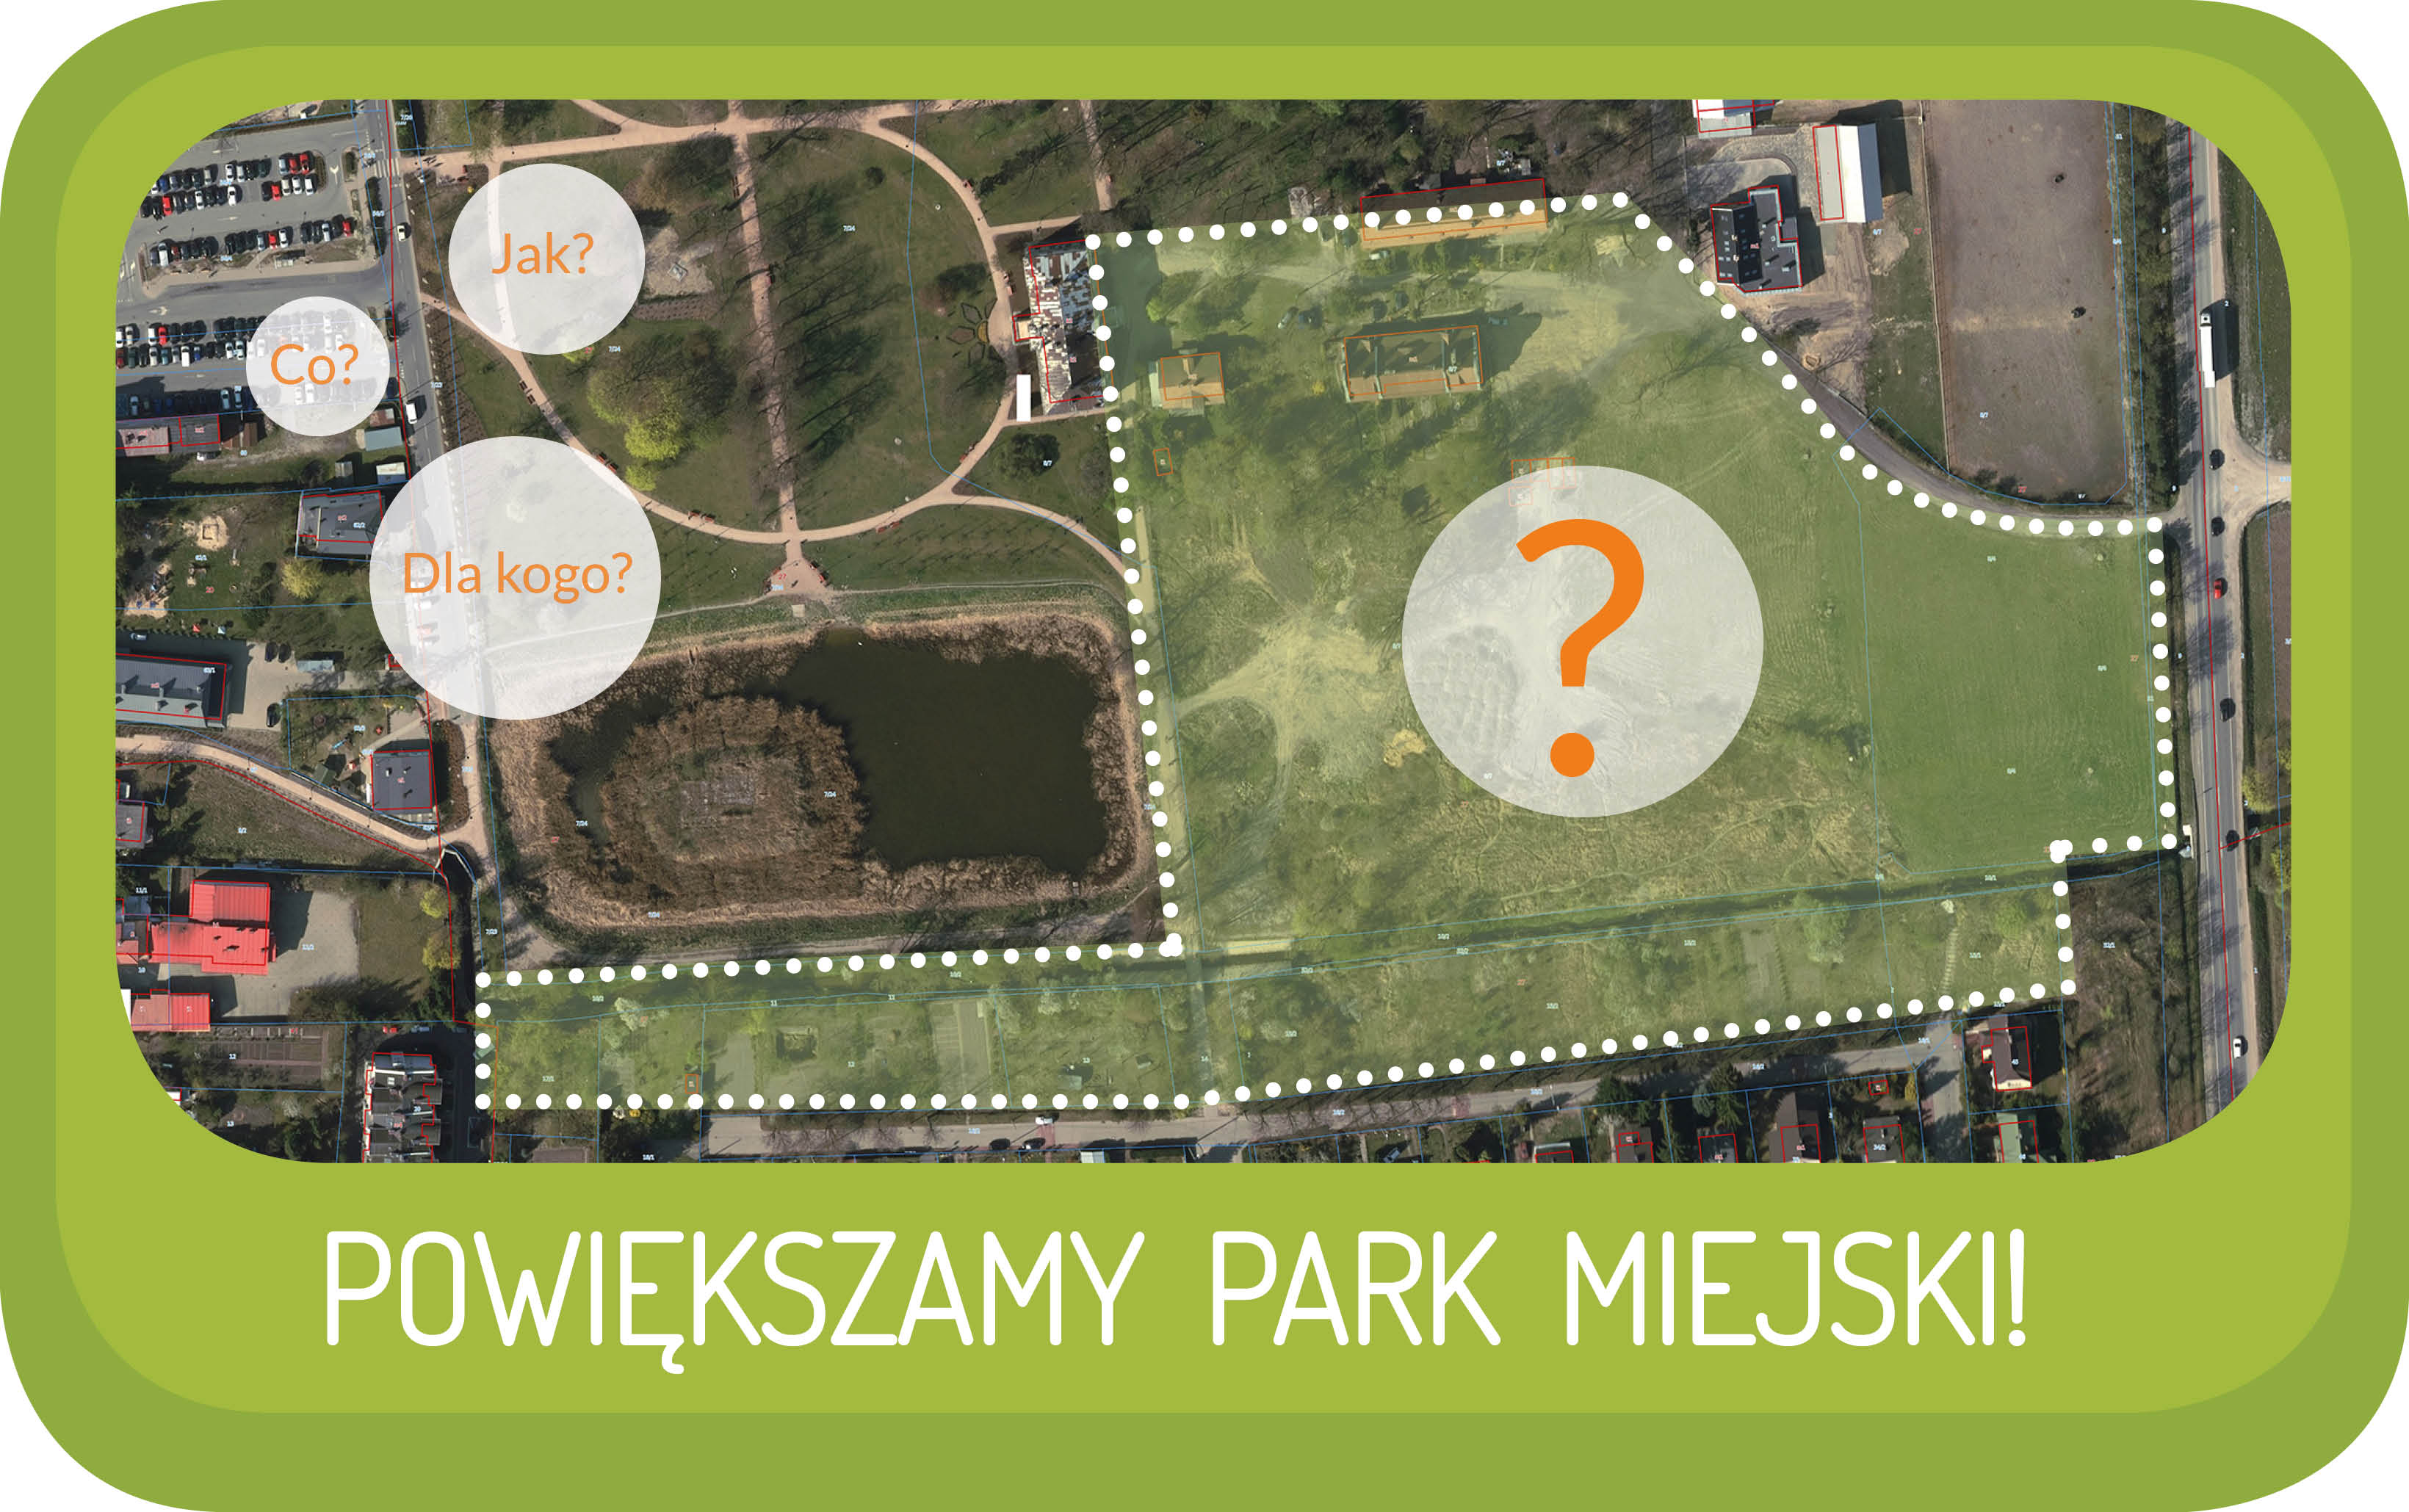 Powiększamy Park Miejski - Burmistrz Miasta I Gminy Piaseczno zaprasza mieszkańców na konsultacje społeczne